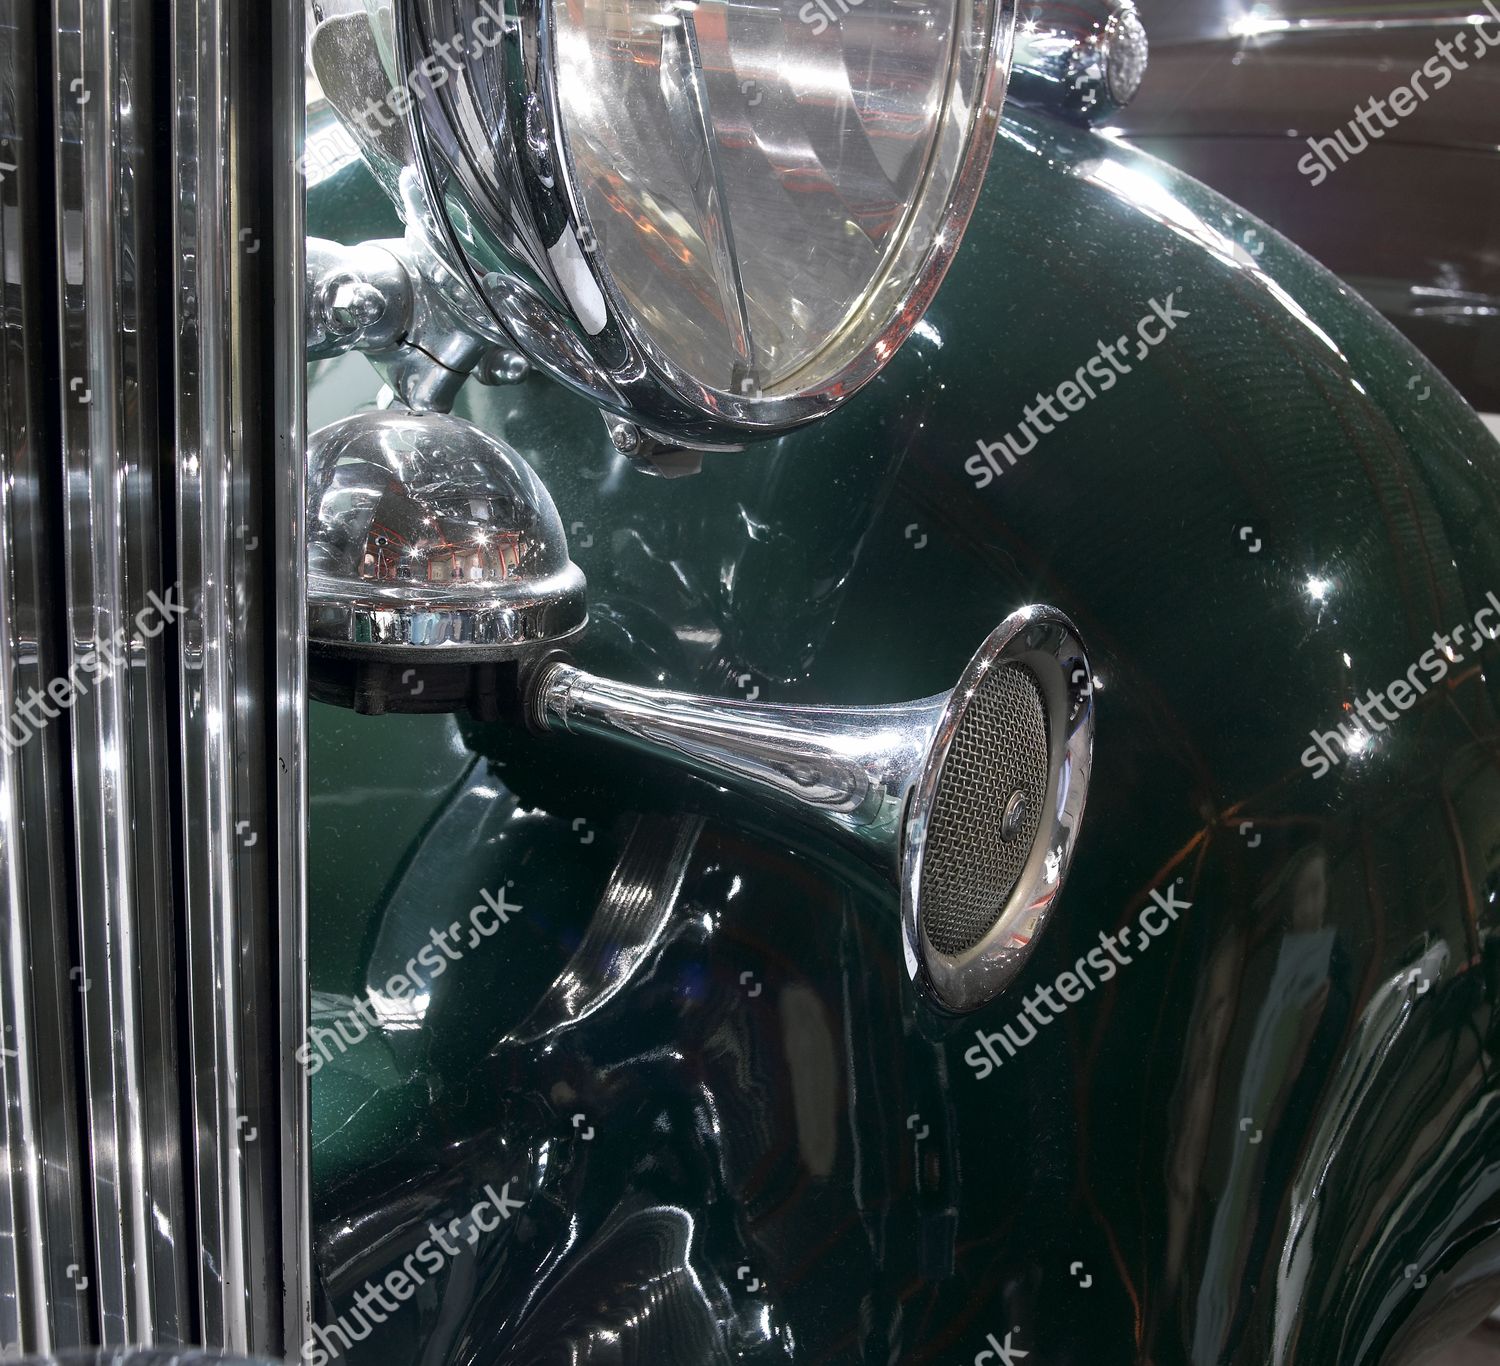 124 RollsRoyce Phantom Model Car Luxury Car  CÔNG TY TNHH DỊCH VỤ BẢO VỆ  THĂNG LONG SECOM